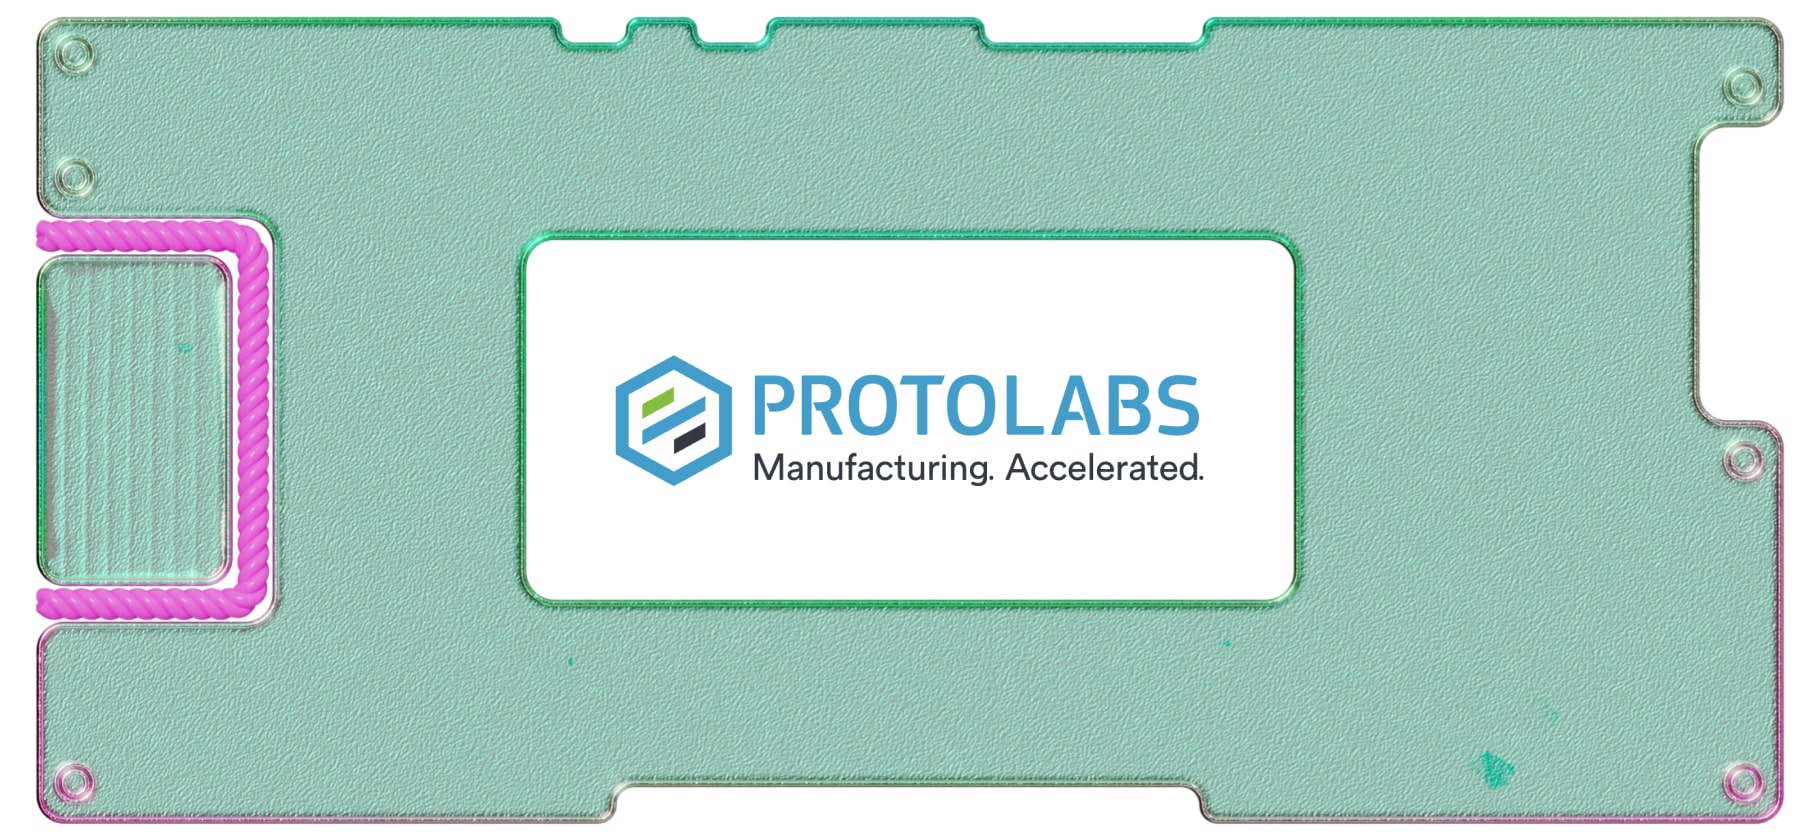 Инвестидея: Proto Labs, потому что есть на что надеяться